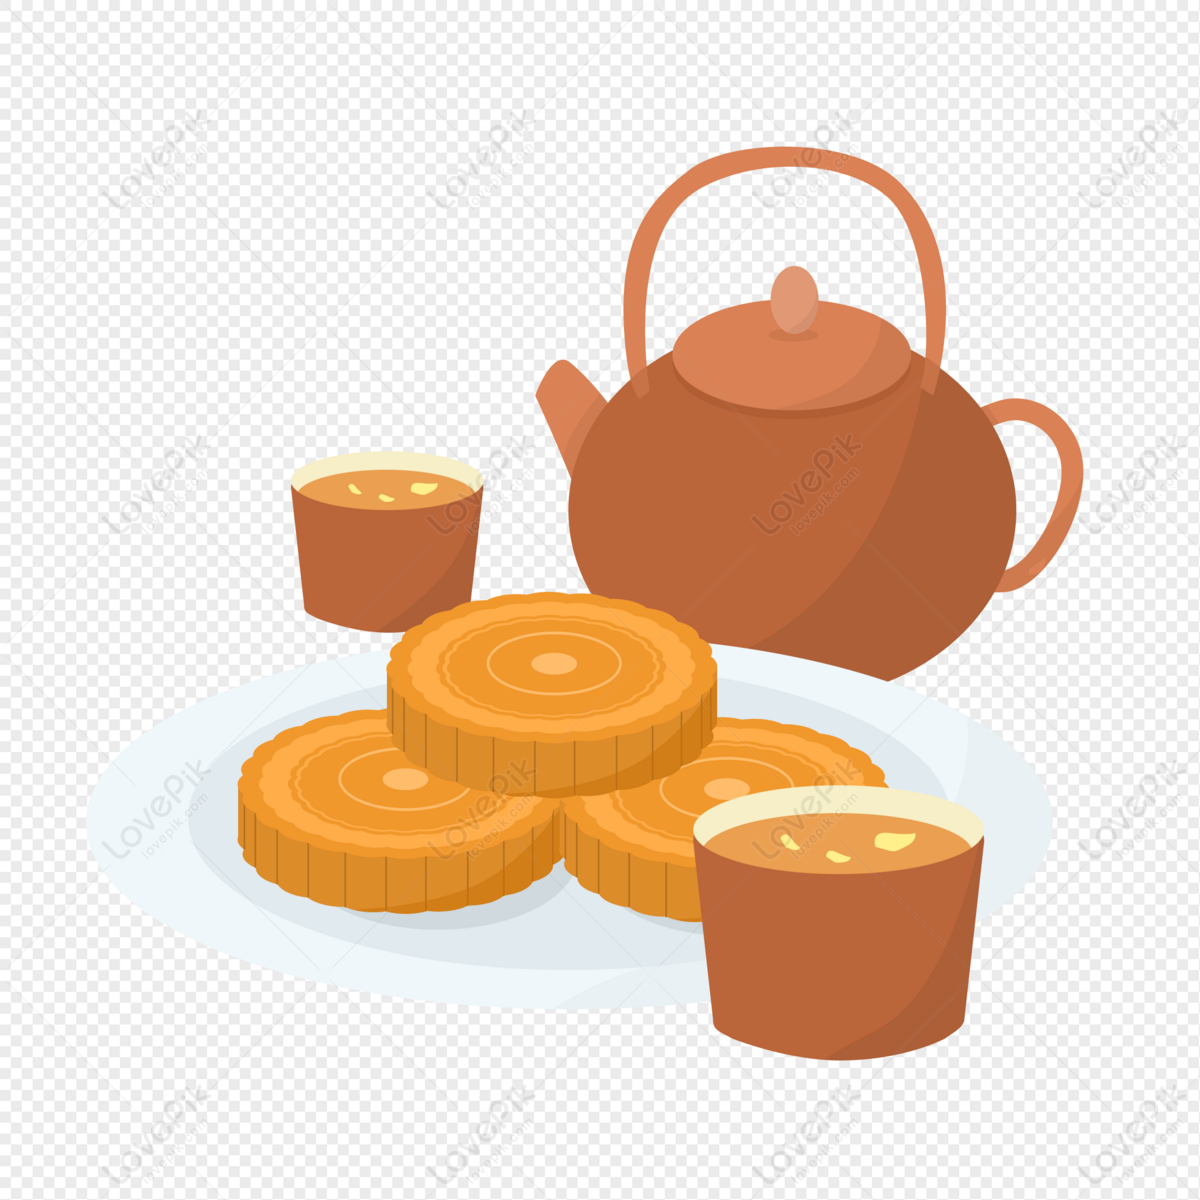 Tea And Moon Cake, Tea, Tea Set, Moon Cake PNG Image Free Download And ...